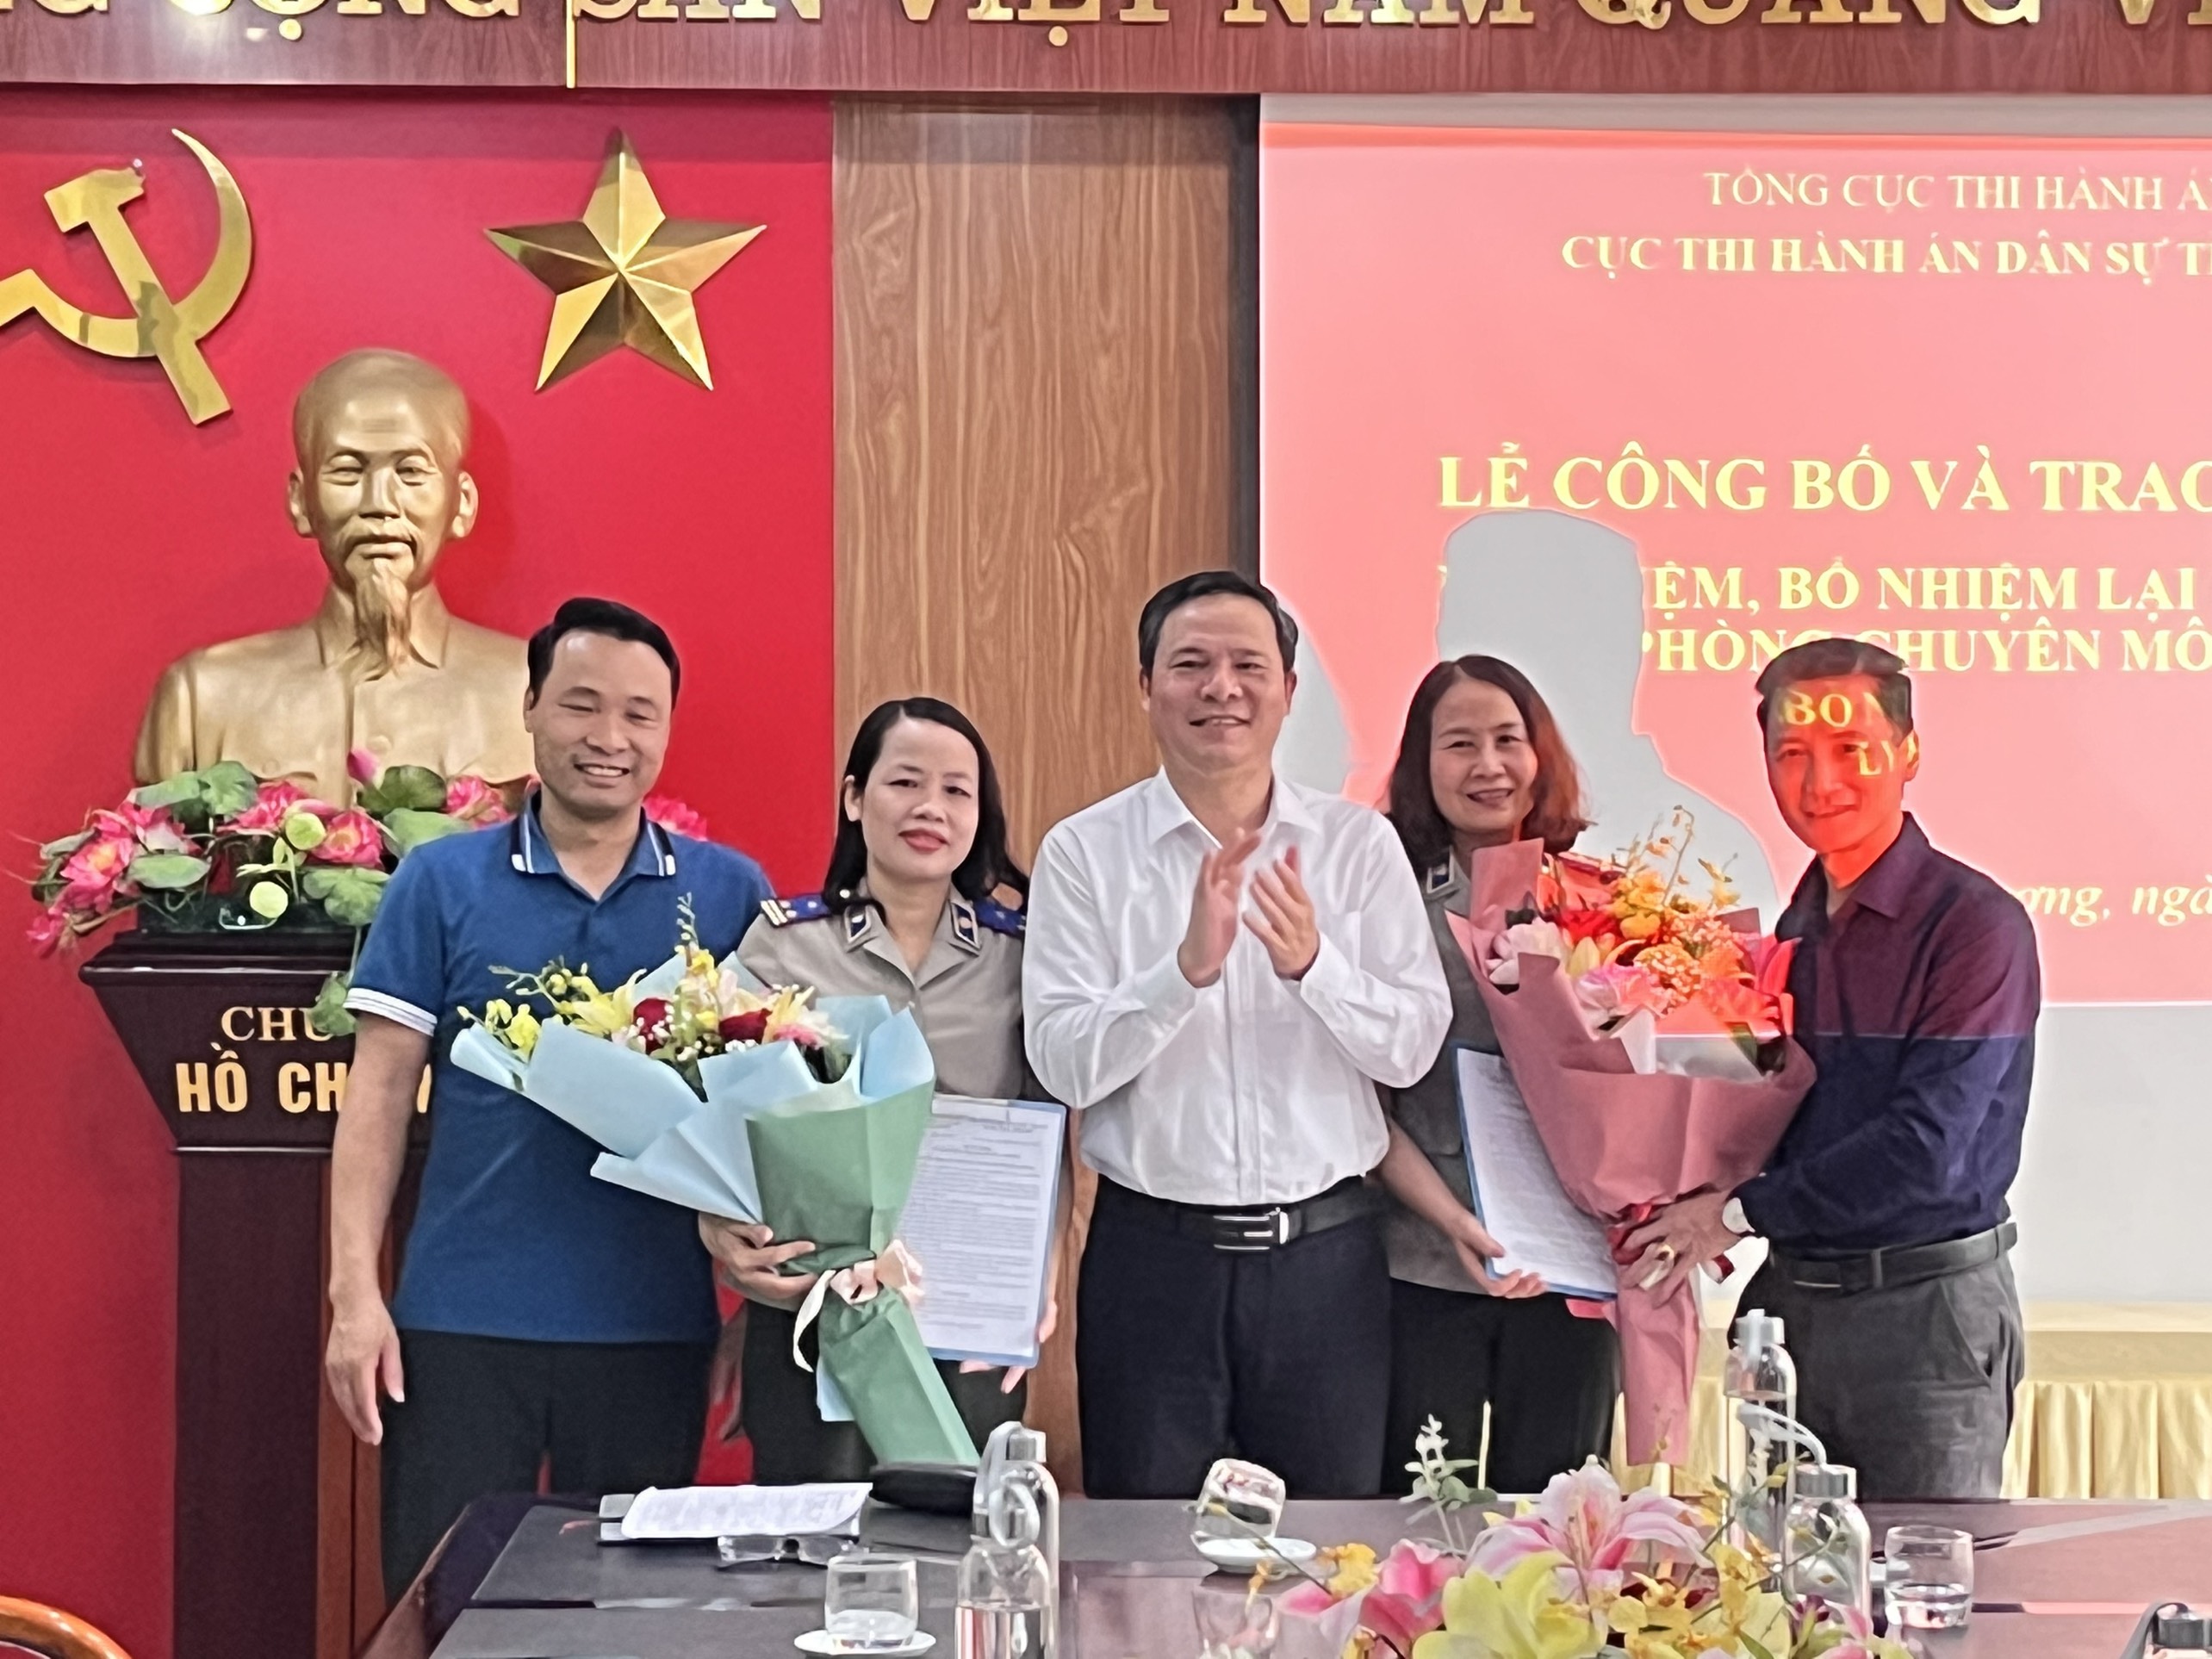 Cục THADS tỉnh Hải Dương công bố quyết định bổ nhiệm Trưởng phòng Tổ chức cán bộ và bổ nhiệm lại Phó trưởng phòng Nghiệp vụ và tổ chức thi hành án.